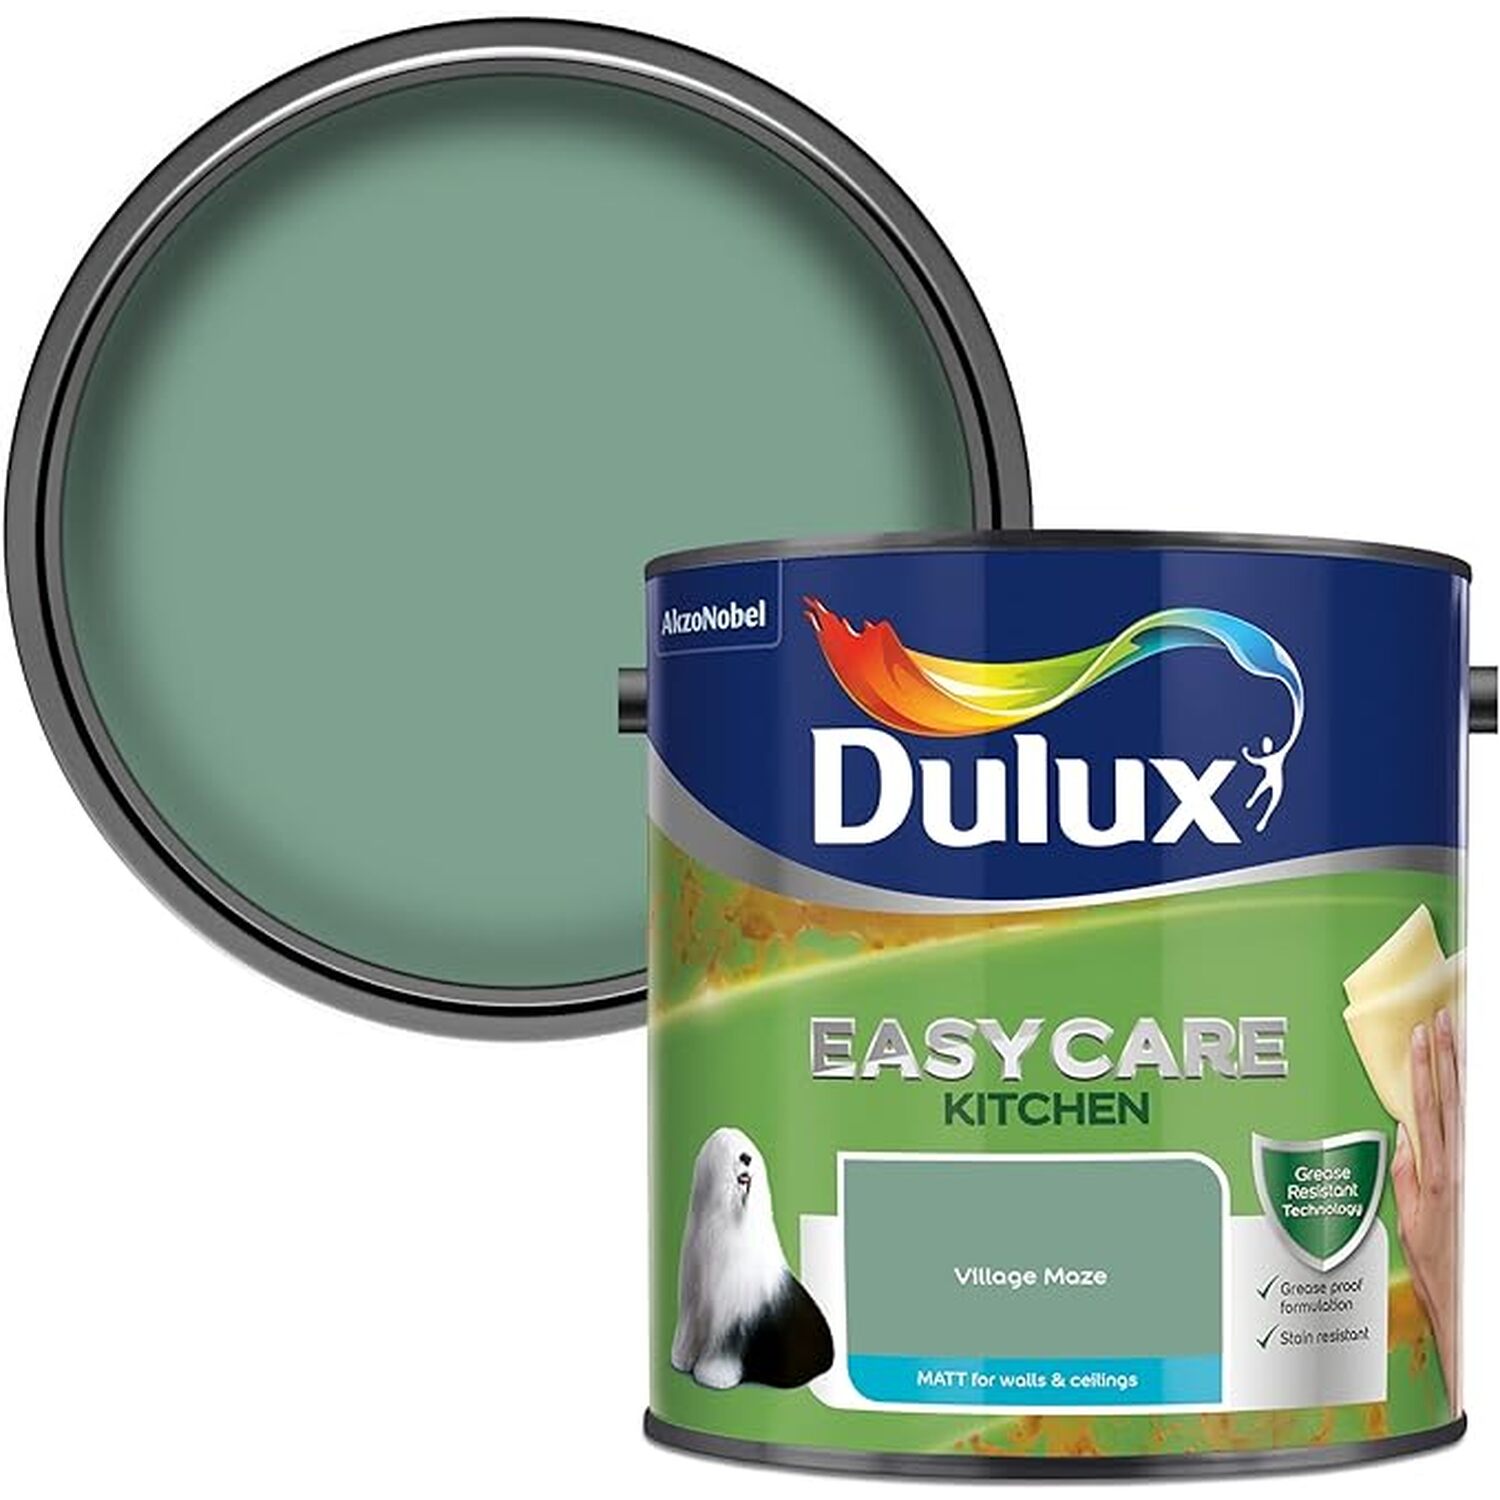 Dulux Easycare Kitchen Village Maze Matt Emulsion Paint 2.5L Image 1